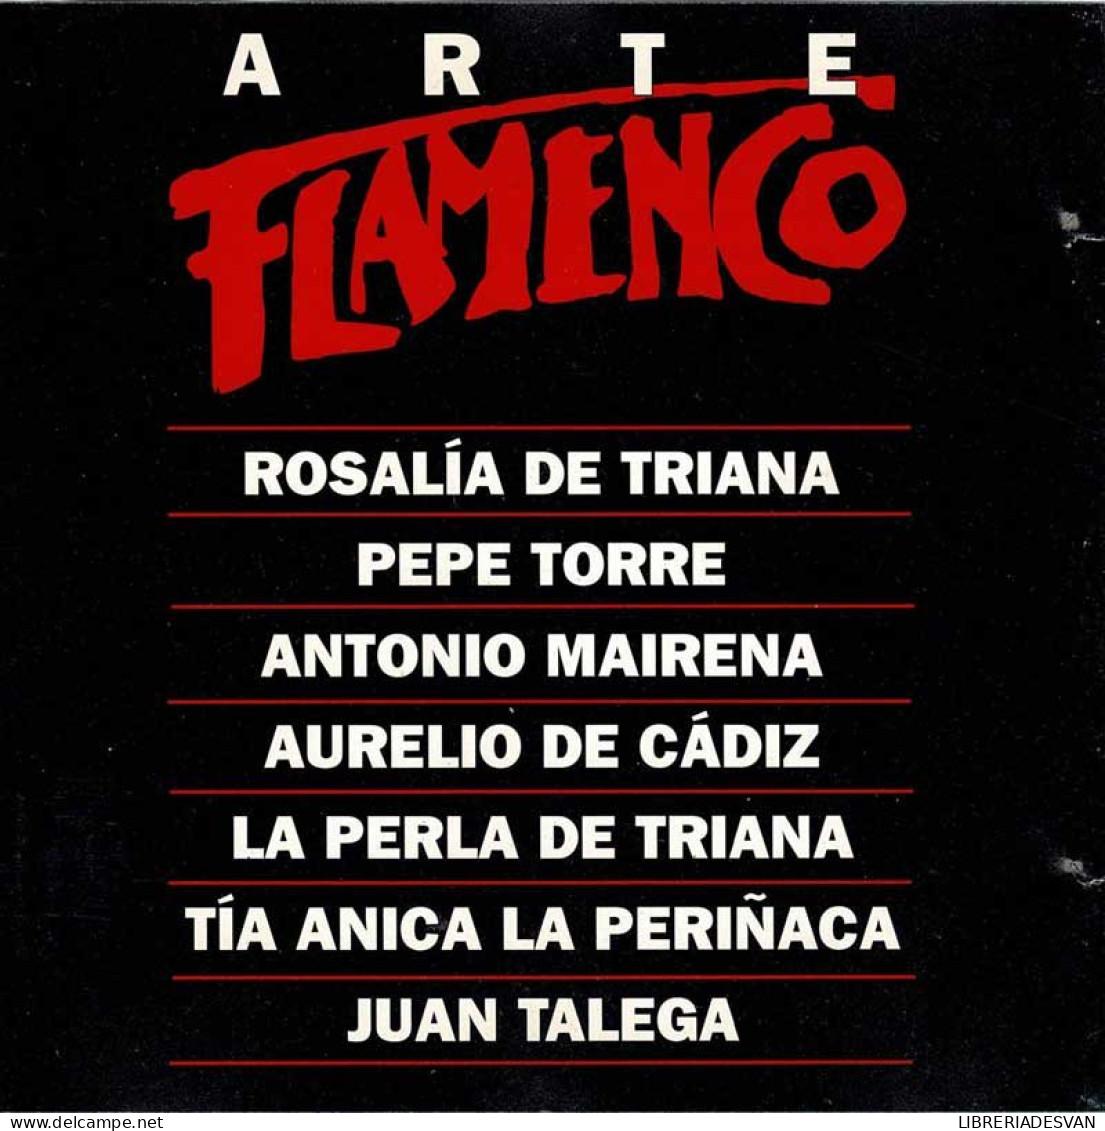 Arte Flamenco - Antología I. CD - Autres - Musique Espagnole